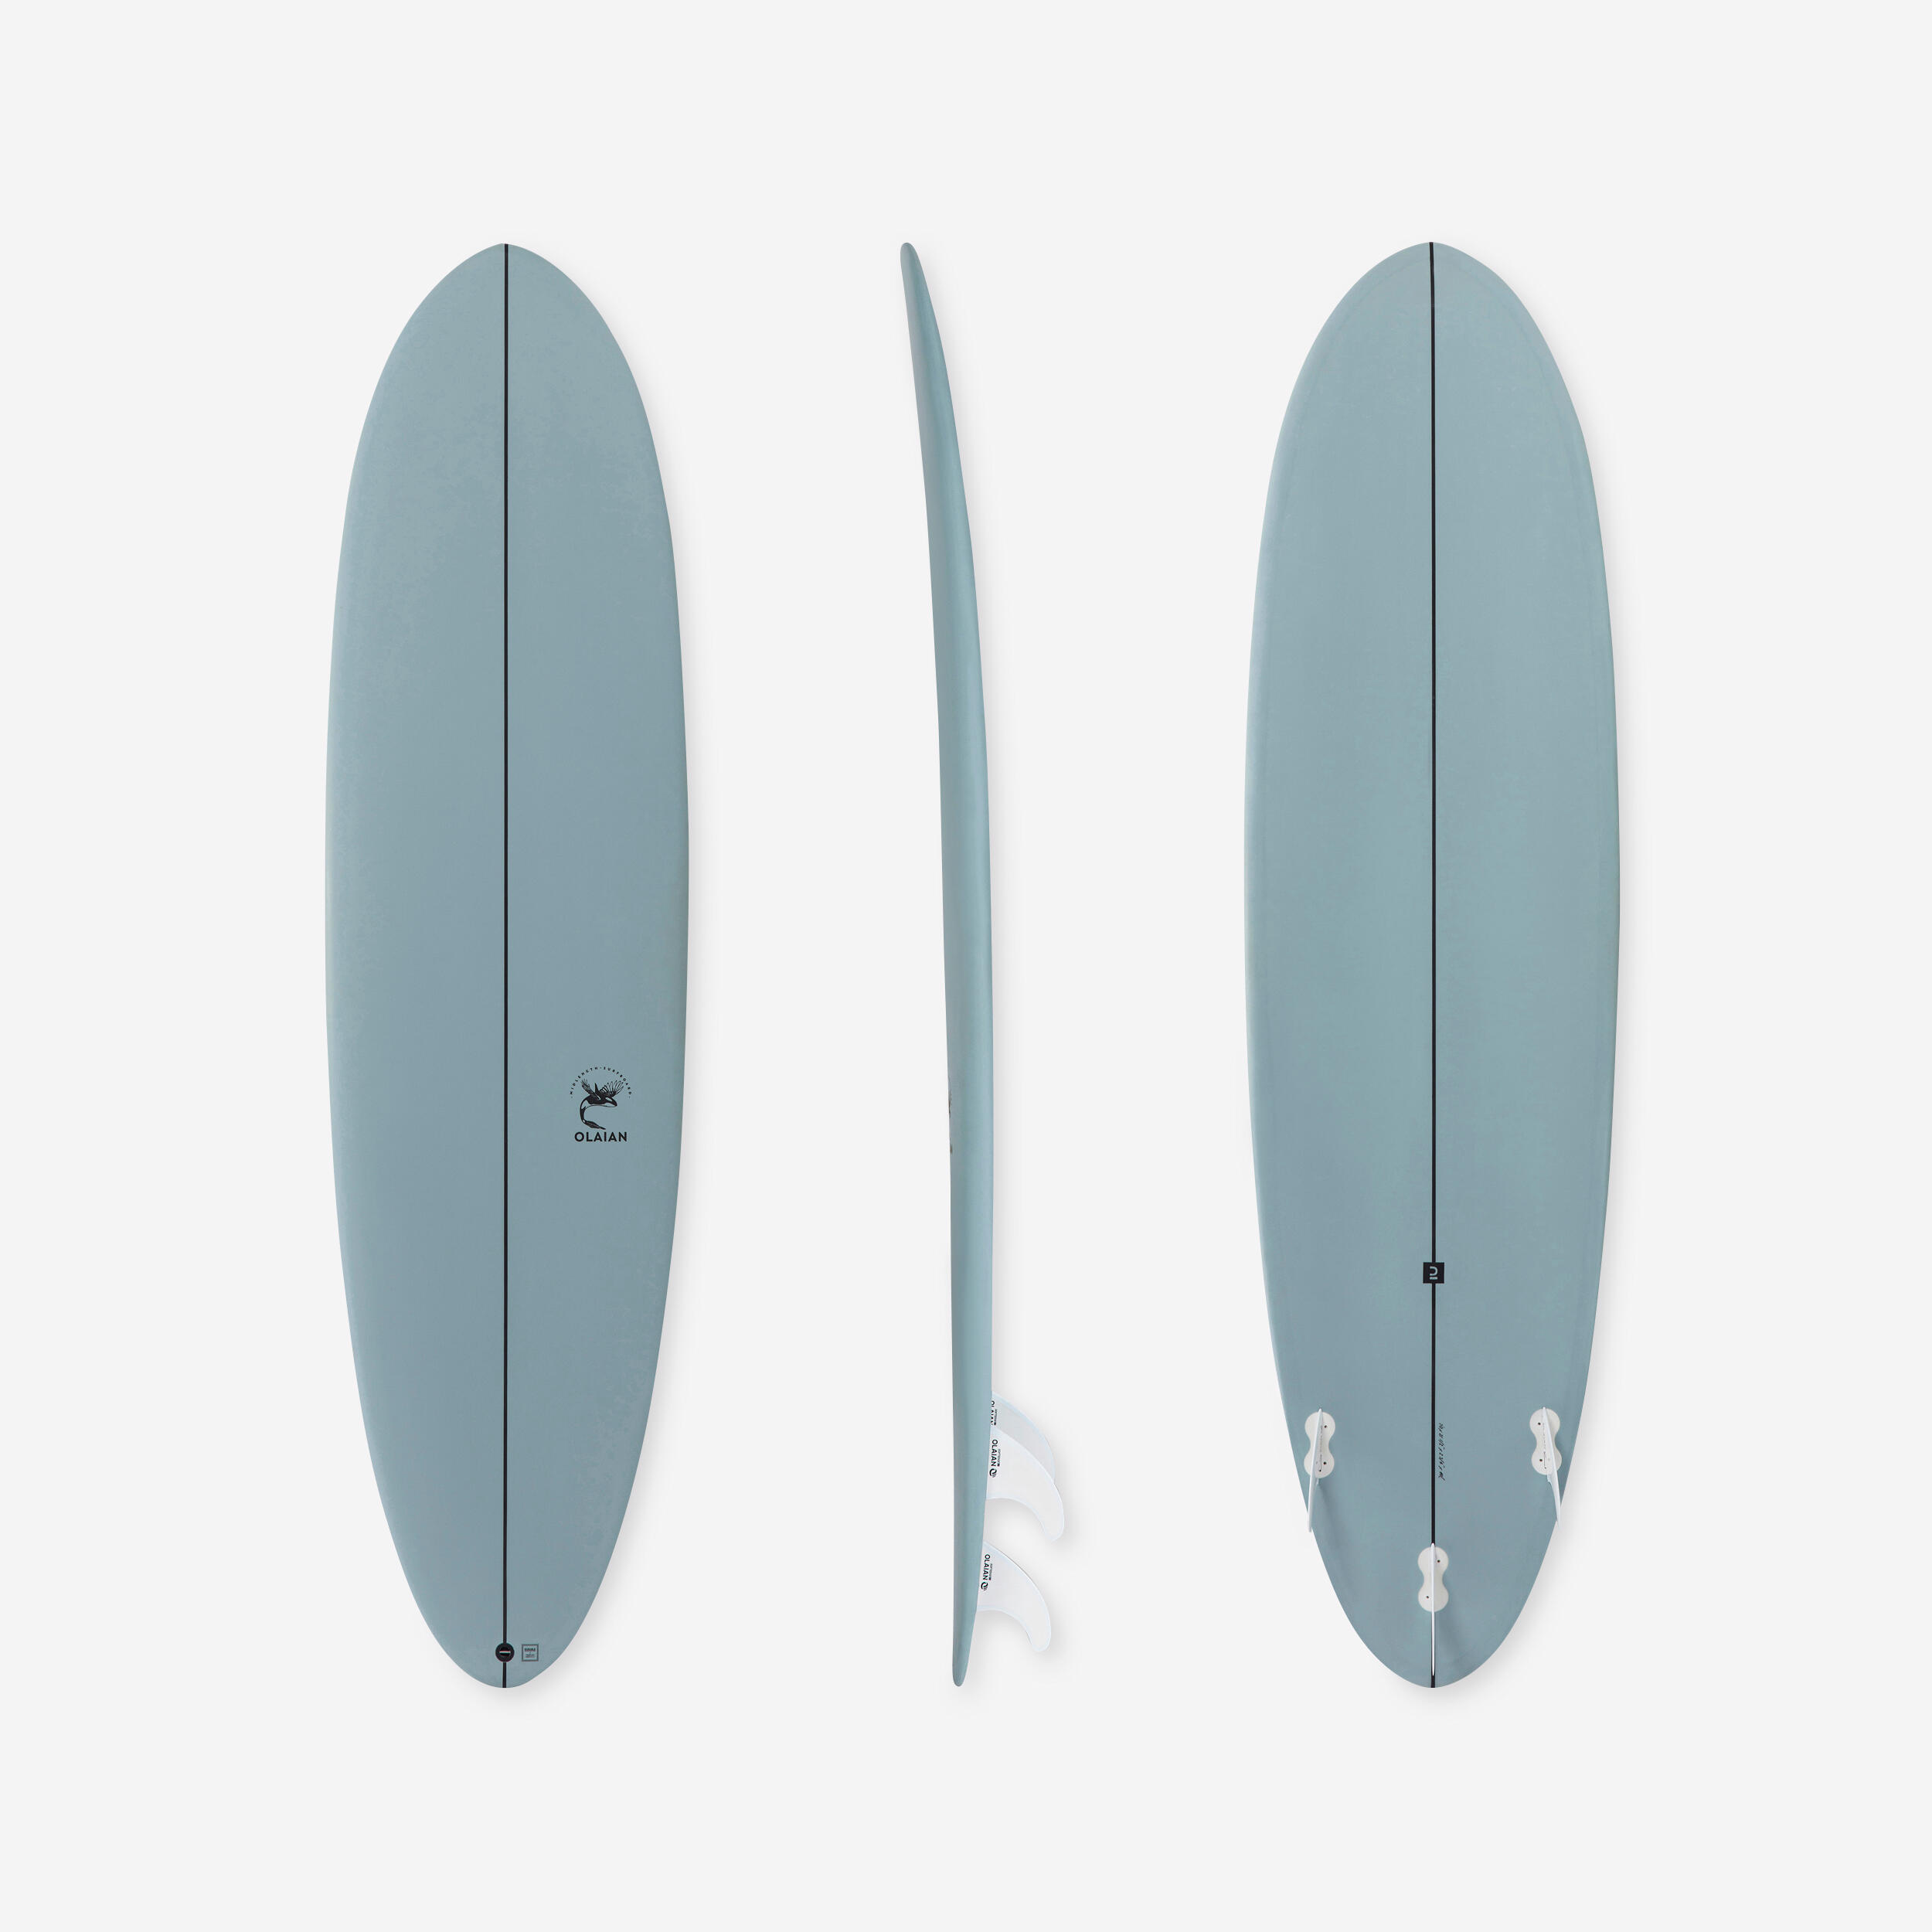 Placă spumă surf 500 7′ 3 înotătoare OLAIAN decathlon.ro